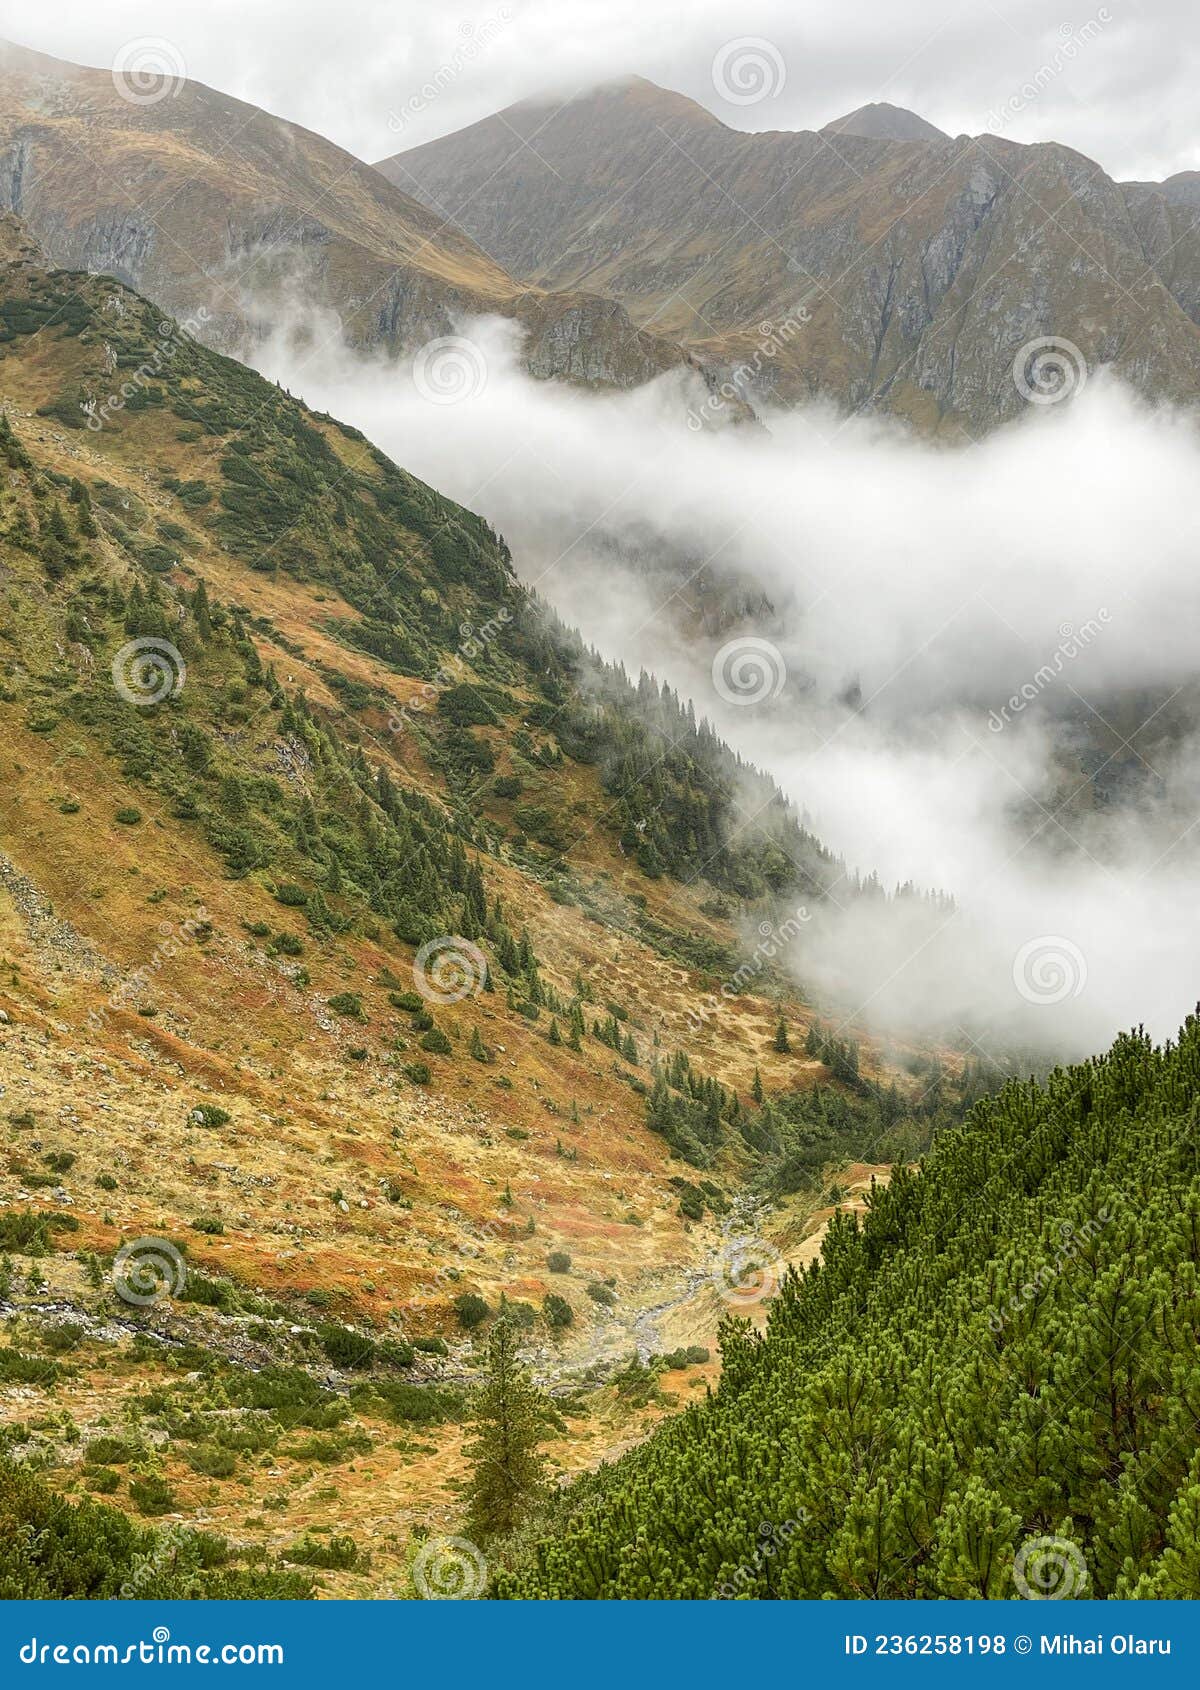 fagaras mountain in a cloudy day around valea rea path